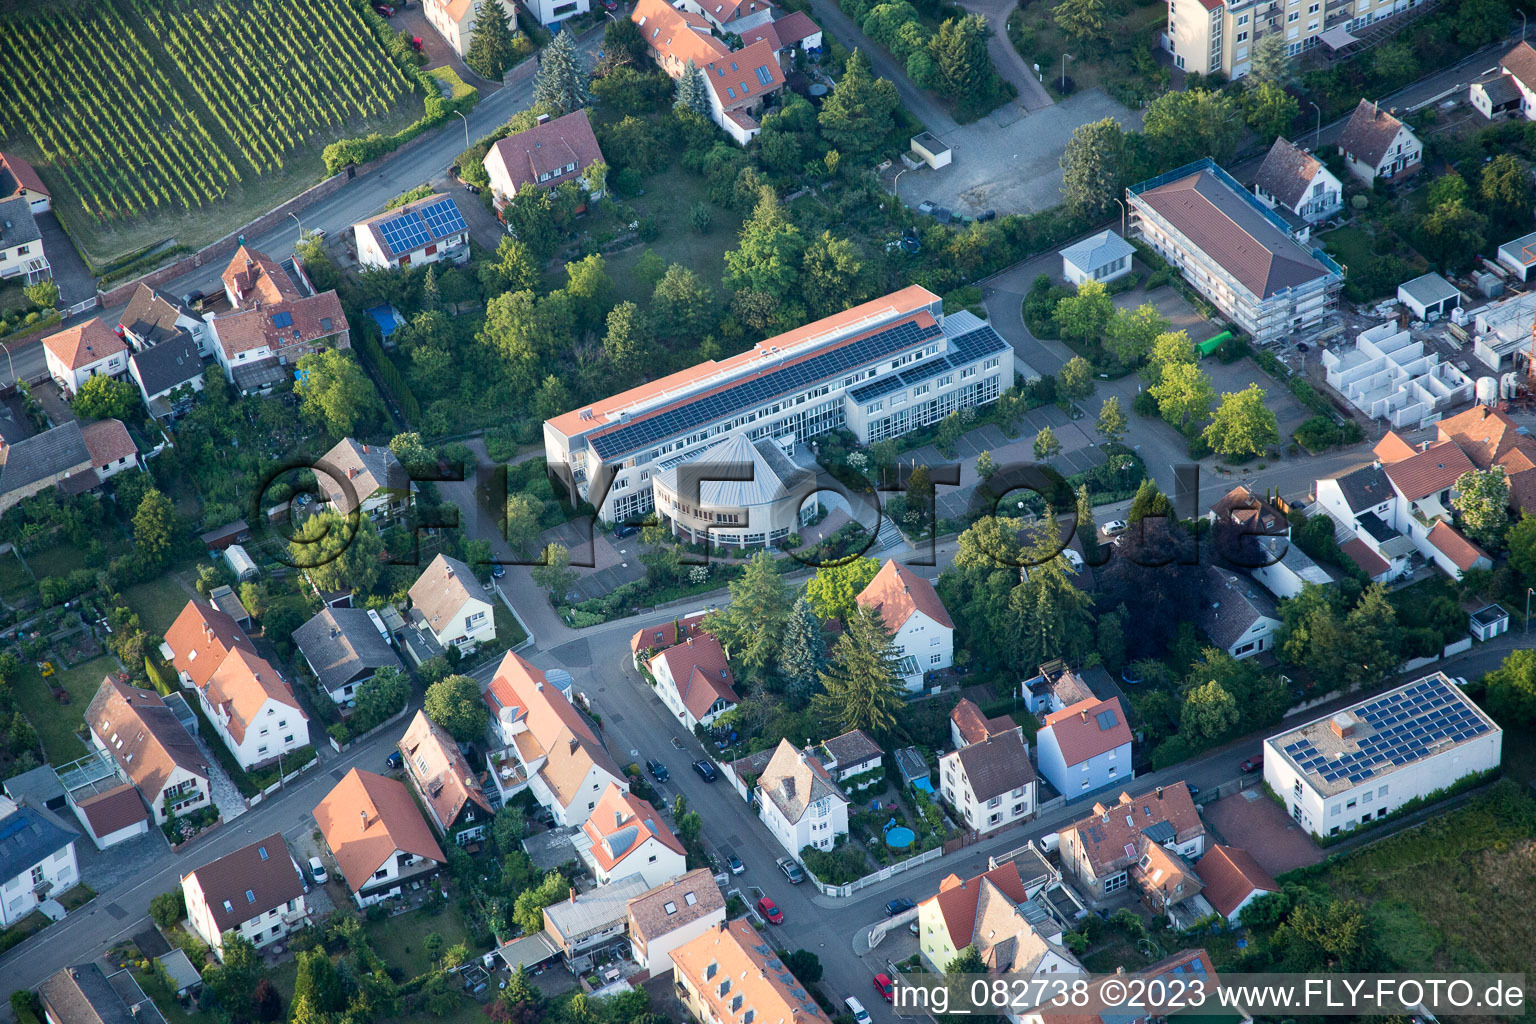 Edenkoben im Bundesland Rheinland-Pfalz, Deutschland aus der Luft betrachtet